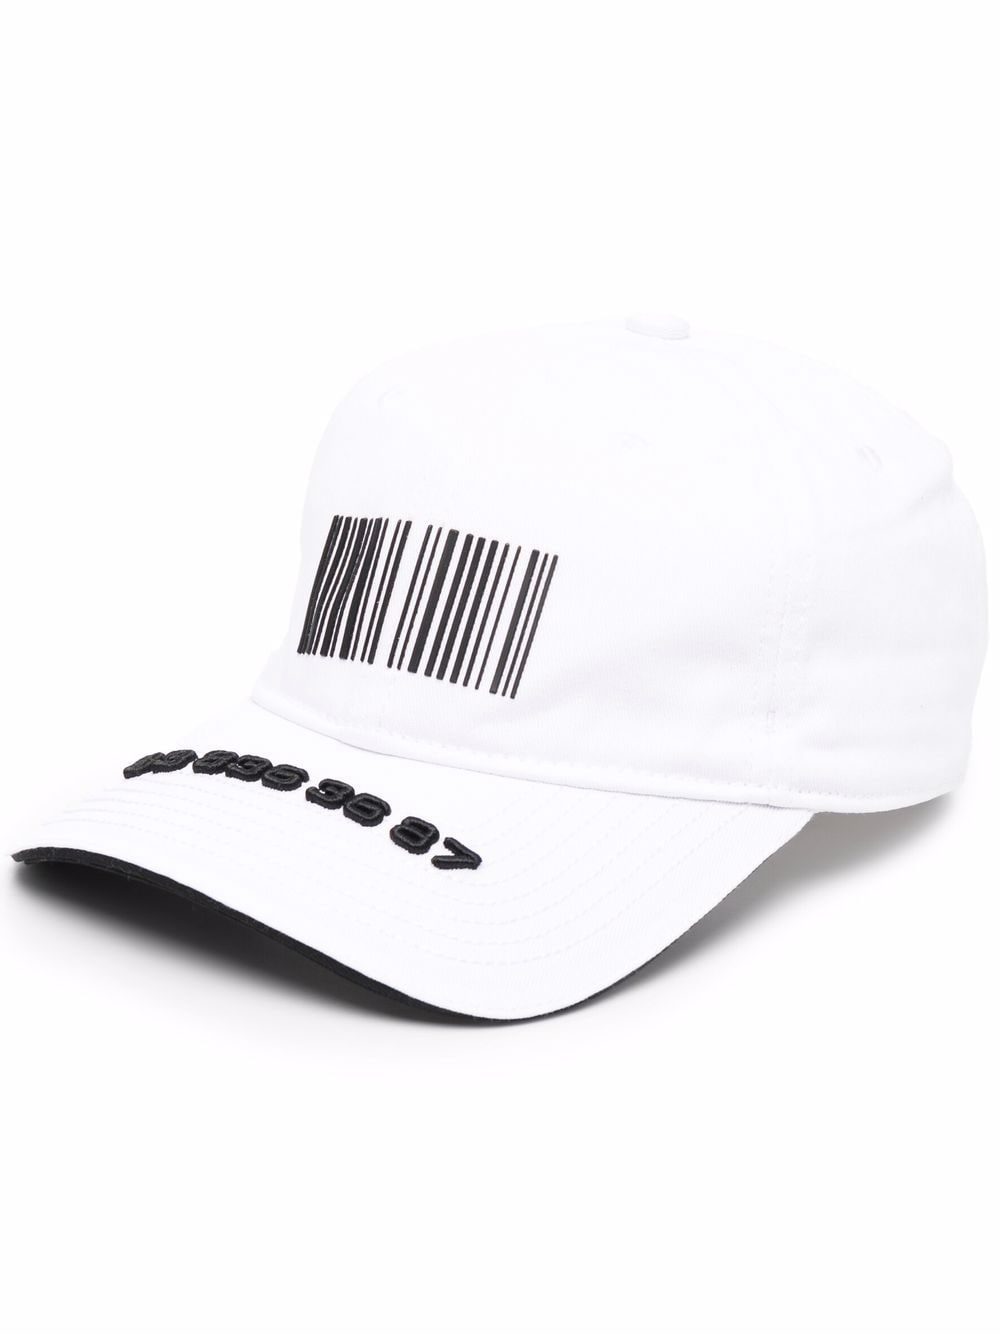 Cappello da baseball in cotone bianco/nero con stampa di codici a barre